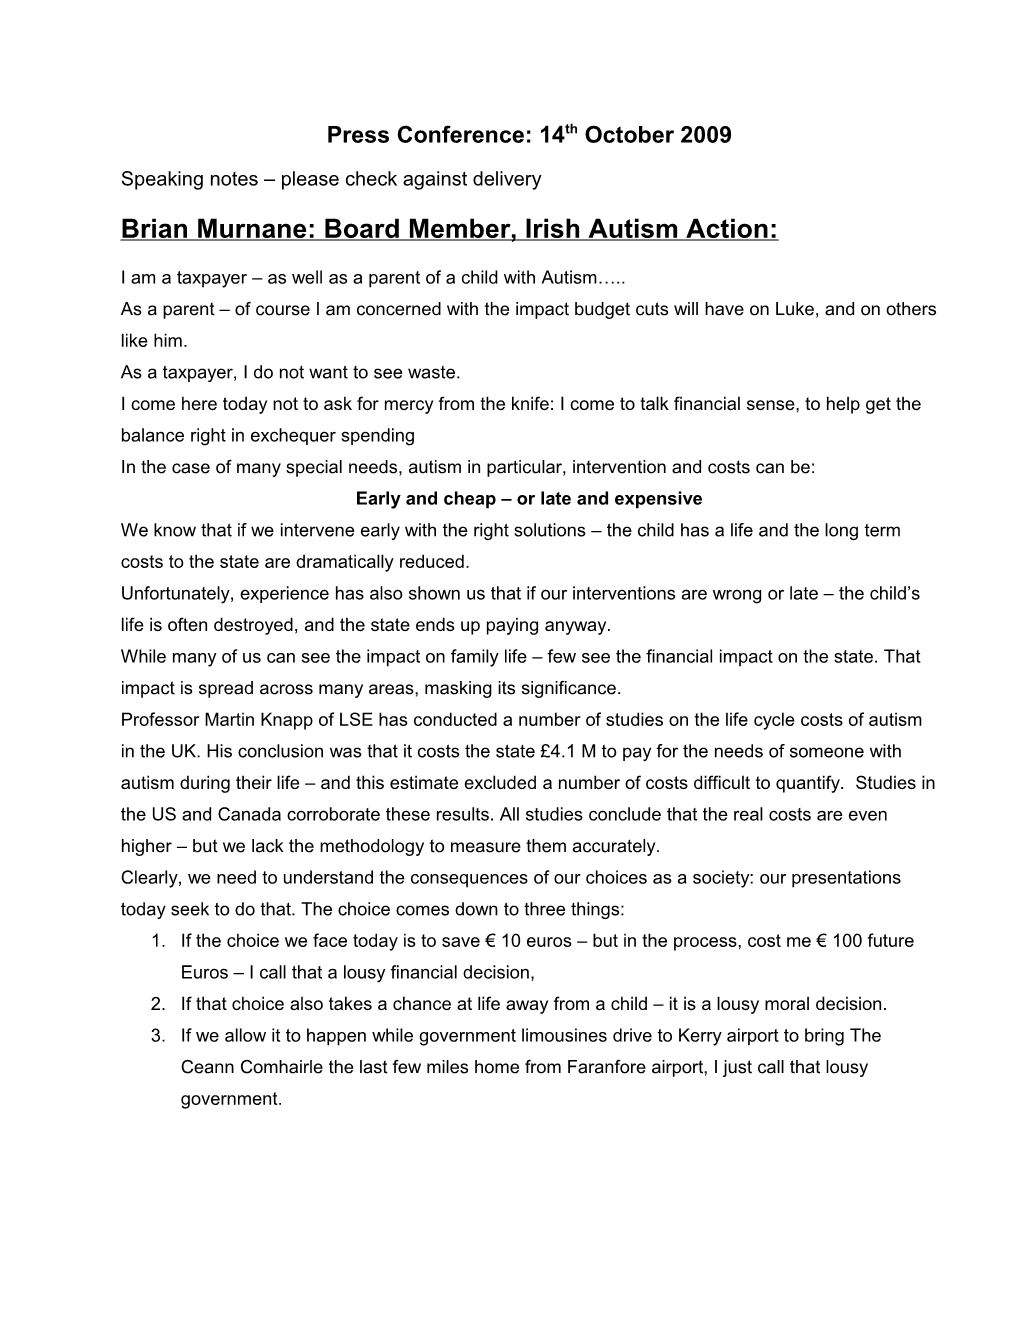 Brian Murnane: Board Member, Irish Autism Action